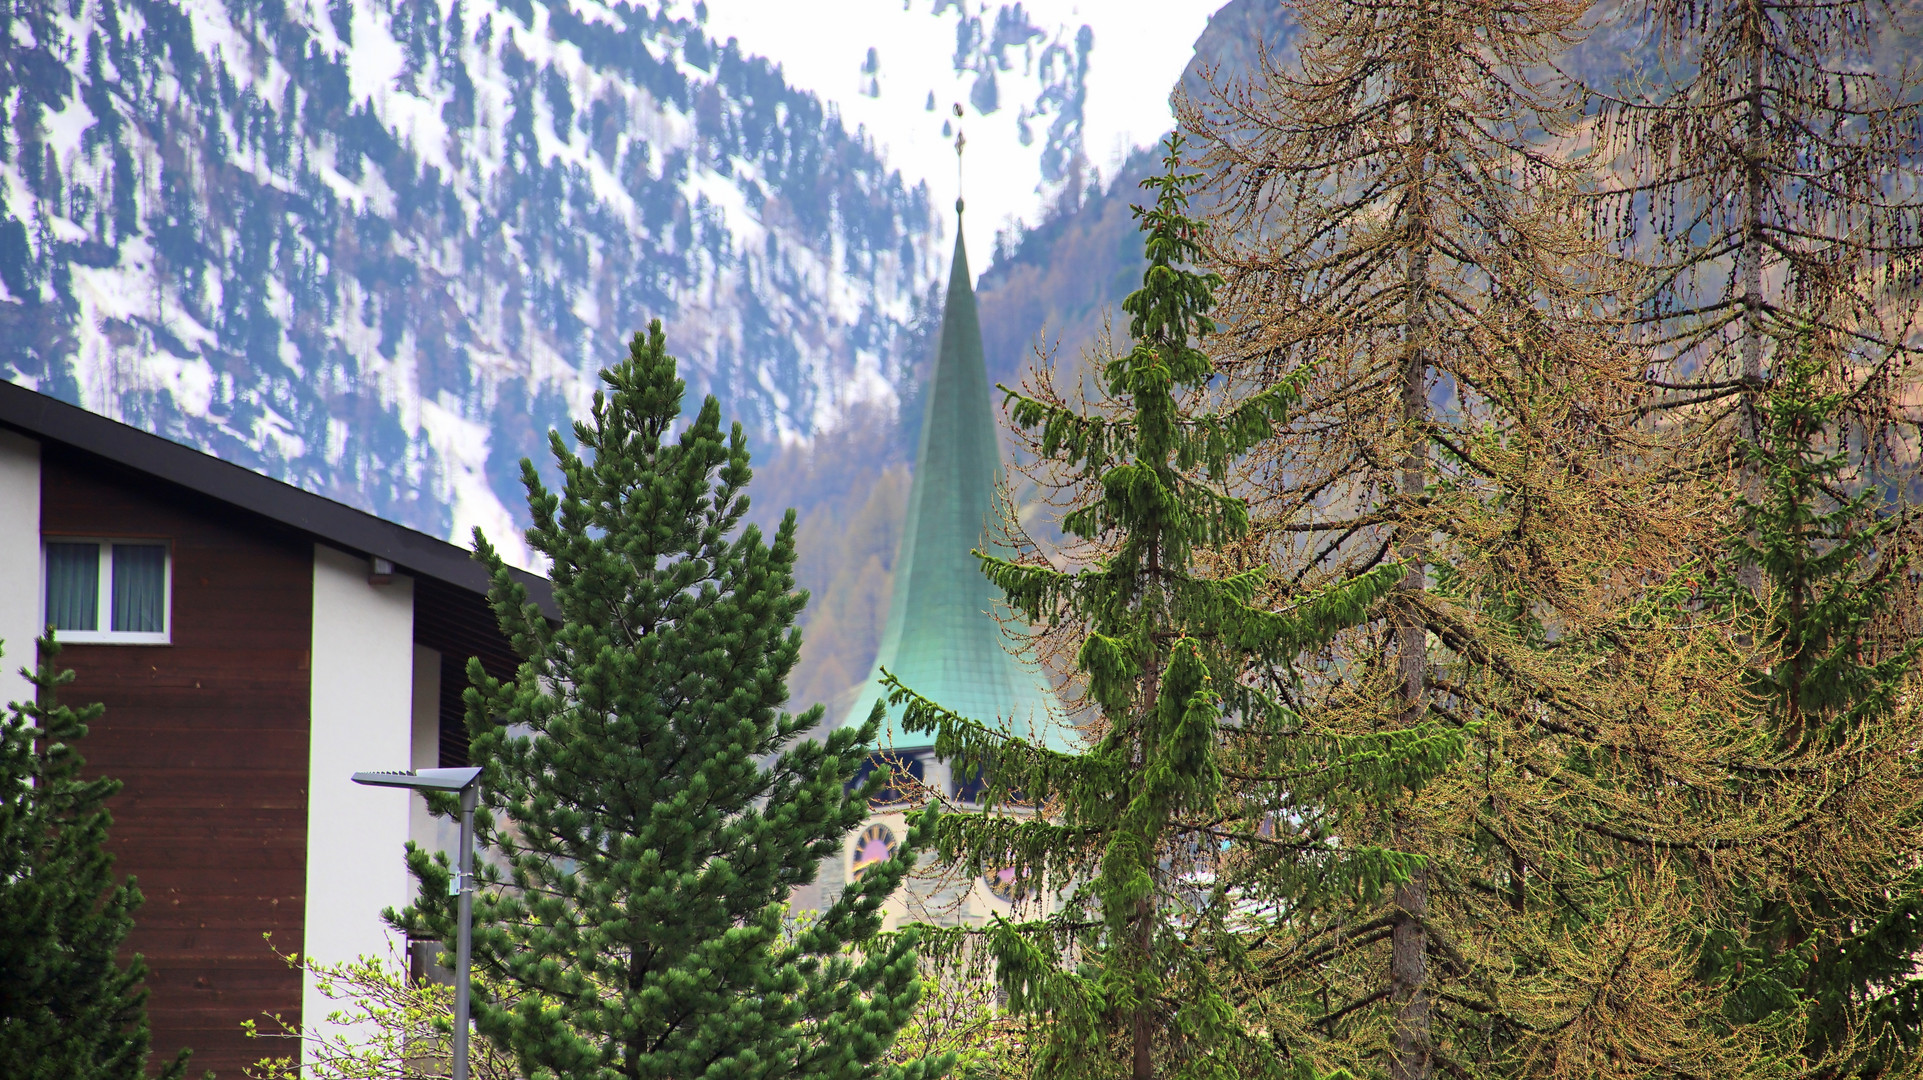 Zum Abschluß des Aufenthaltes in Zermatt noch mal ein Blick auf die Kirchturmspitze